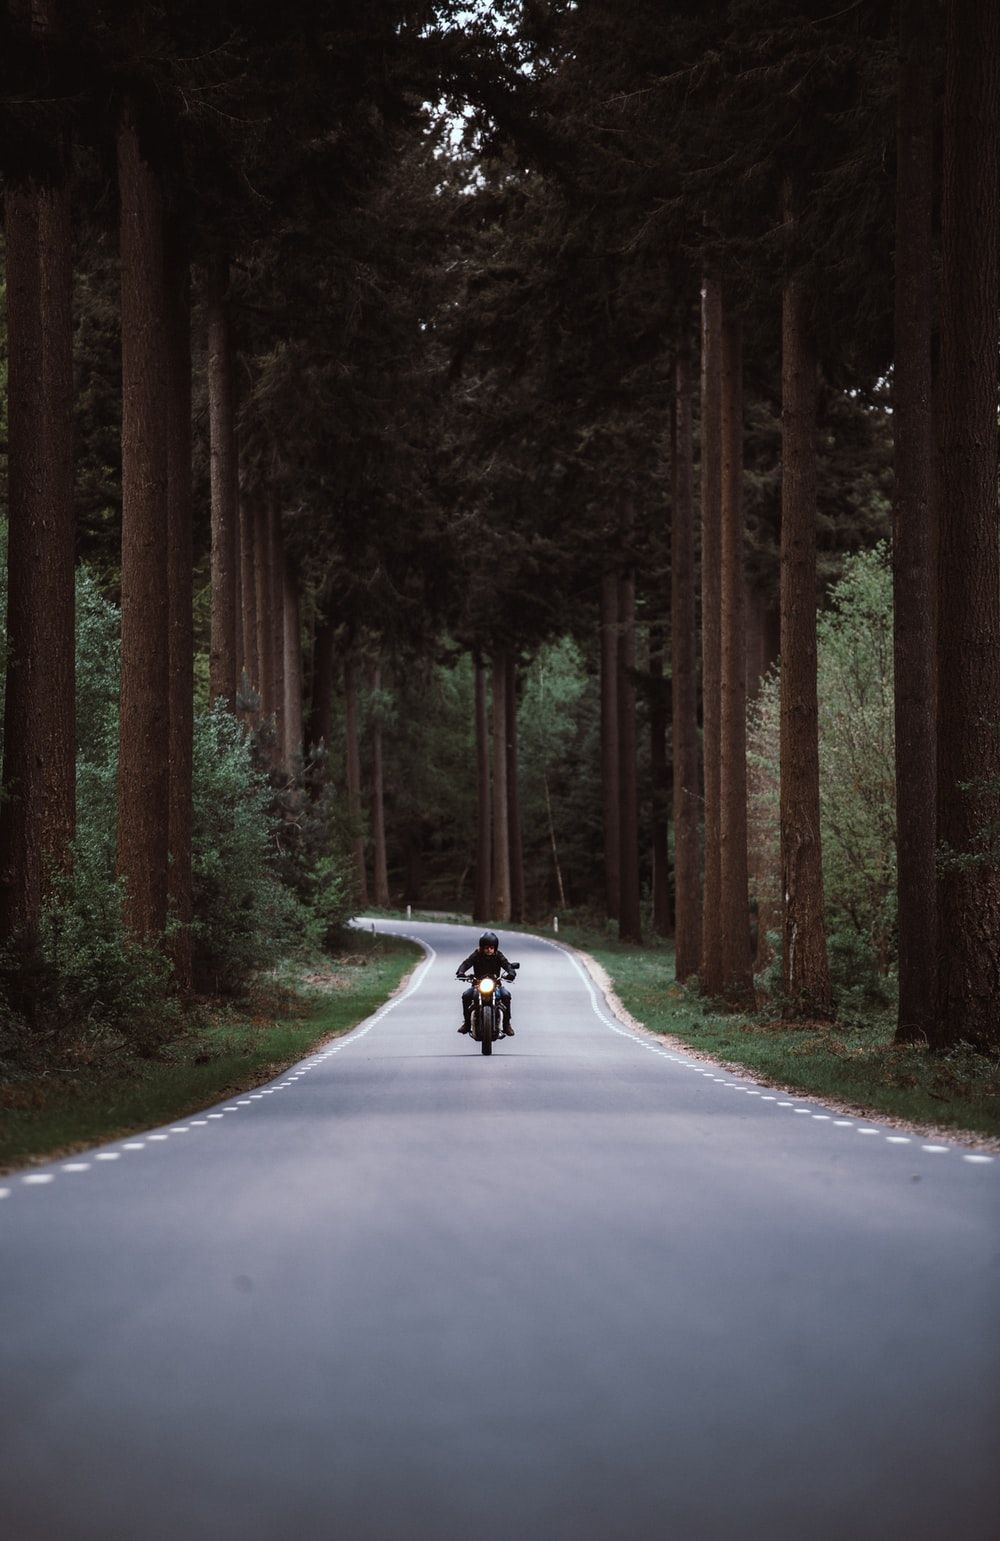 تصویر زمینه جاده و موتور سیکلت